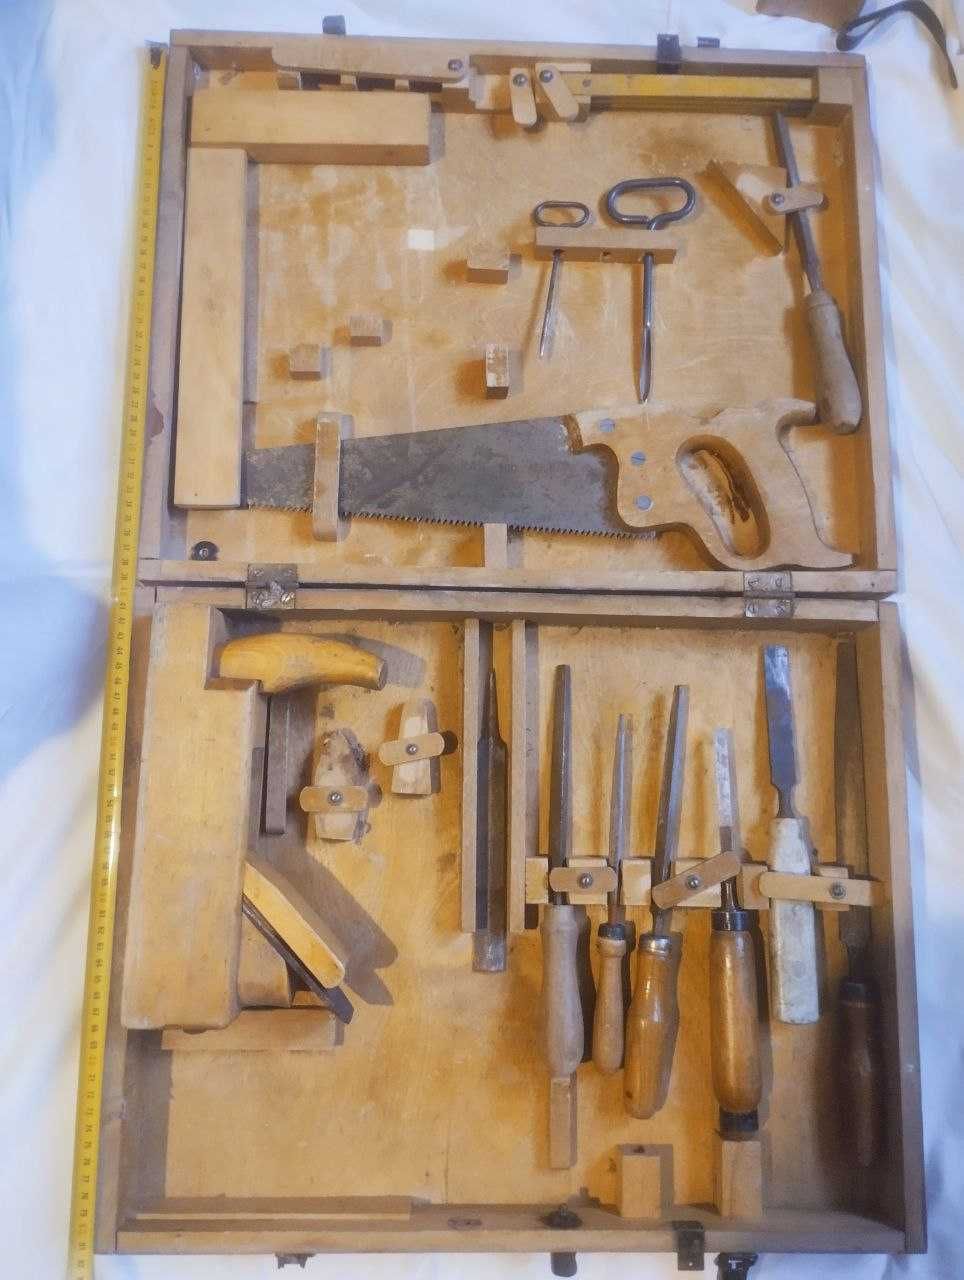 Инструменты плотника,набор,в чемодане СССР 50-60 годы